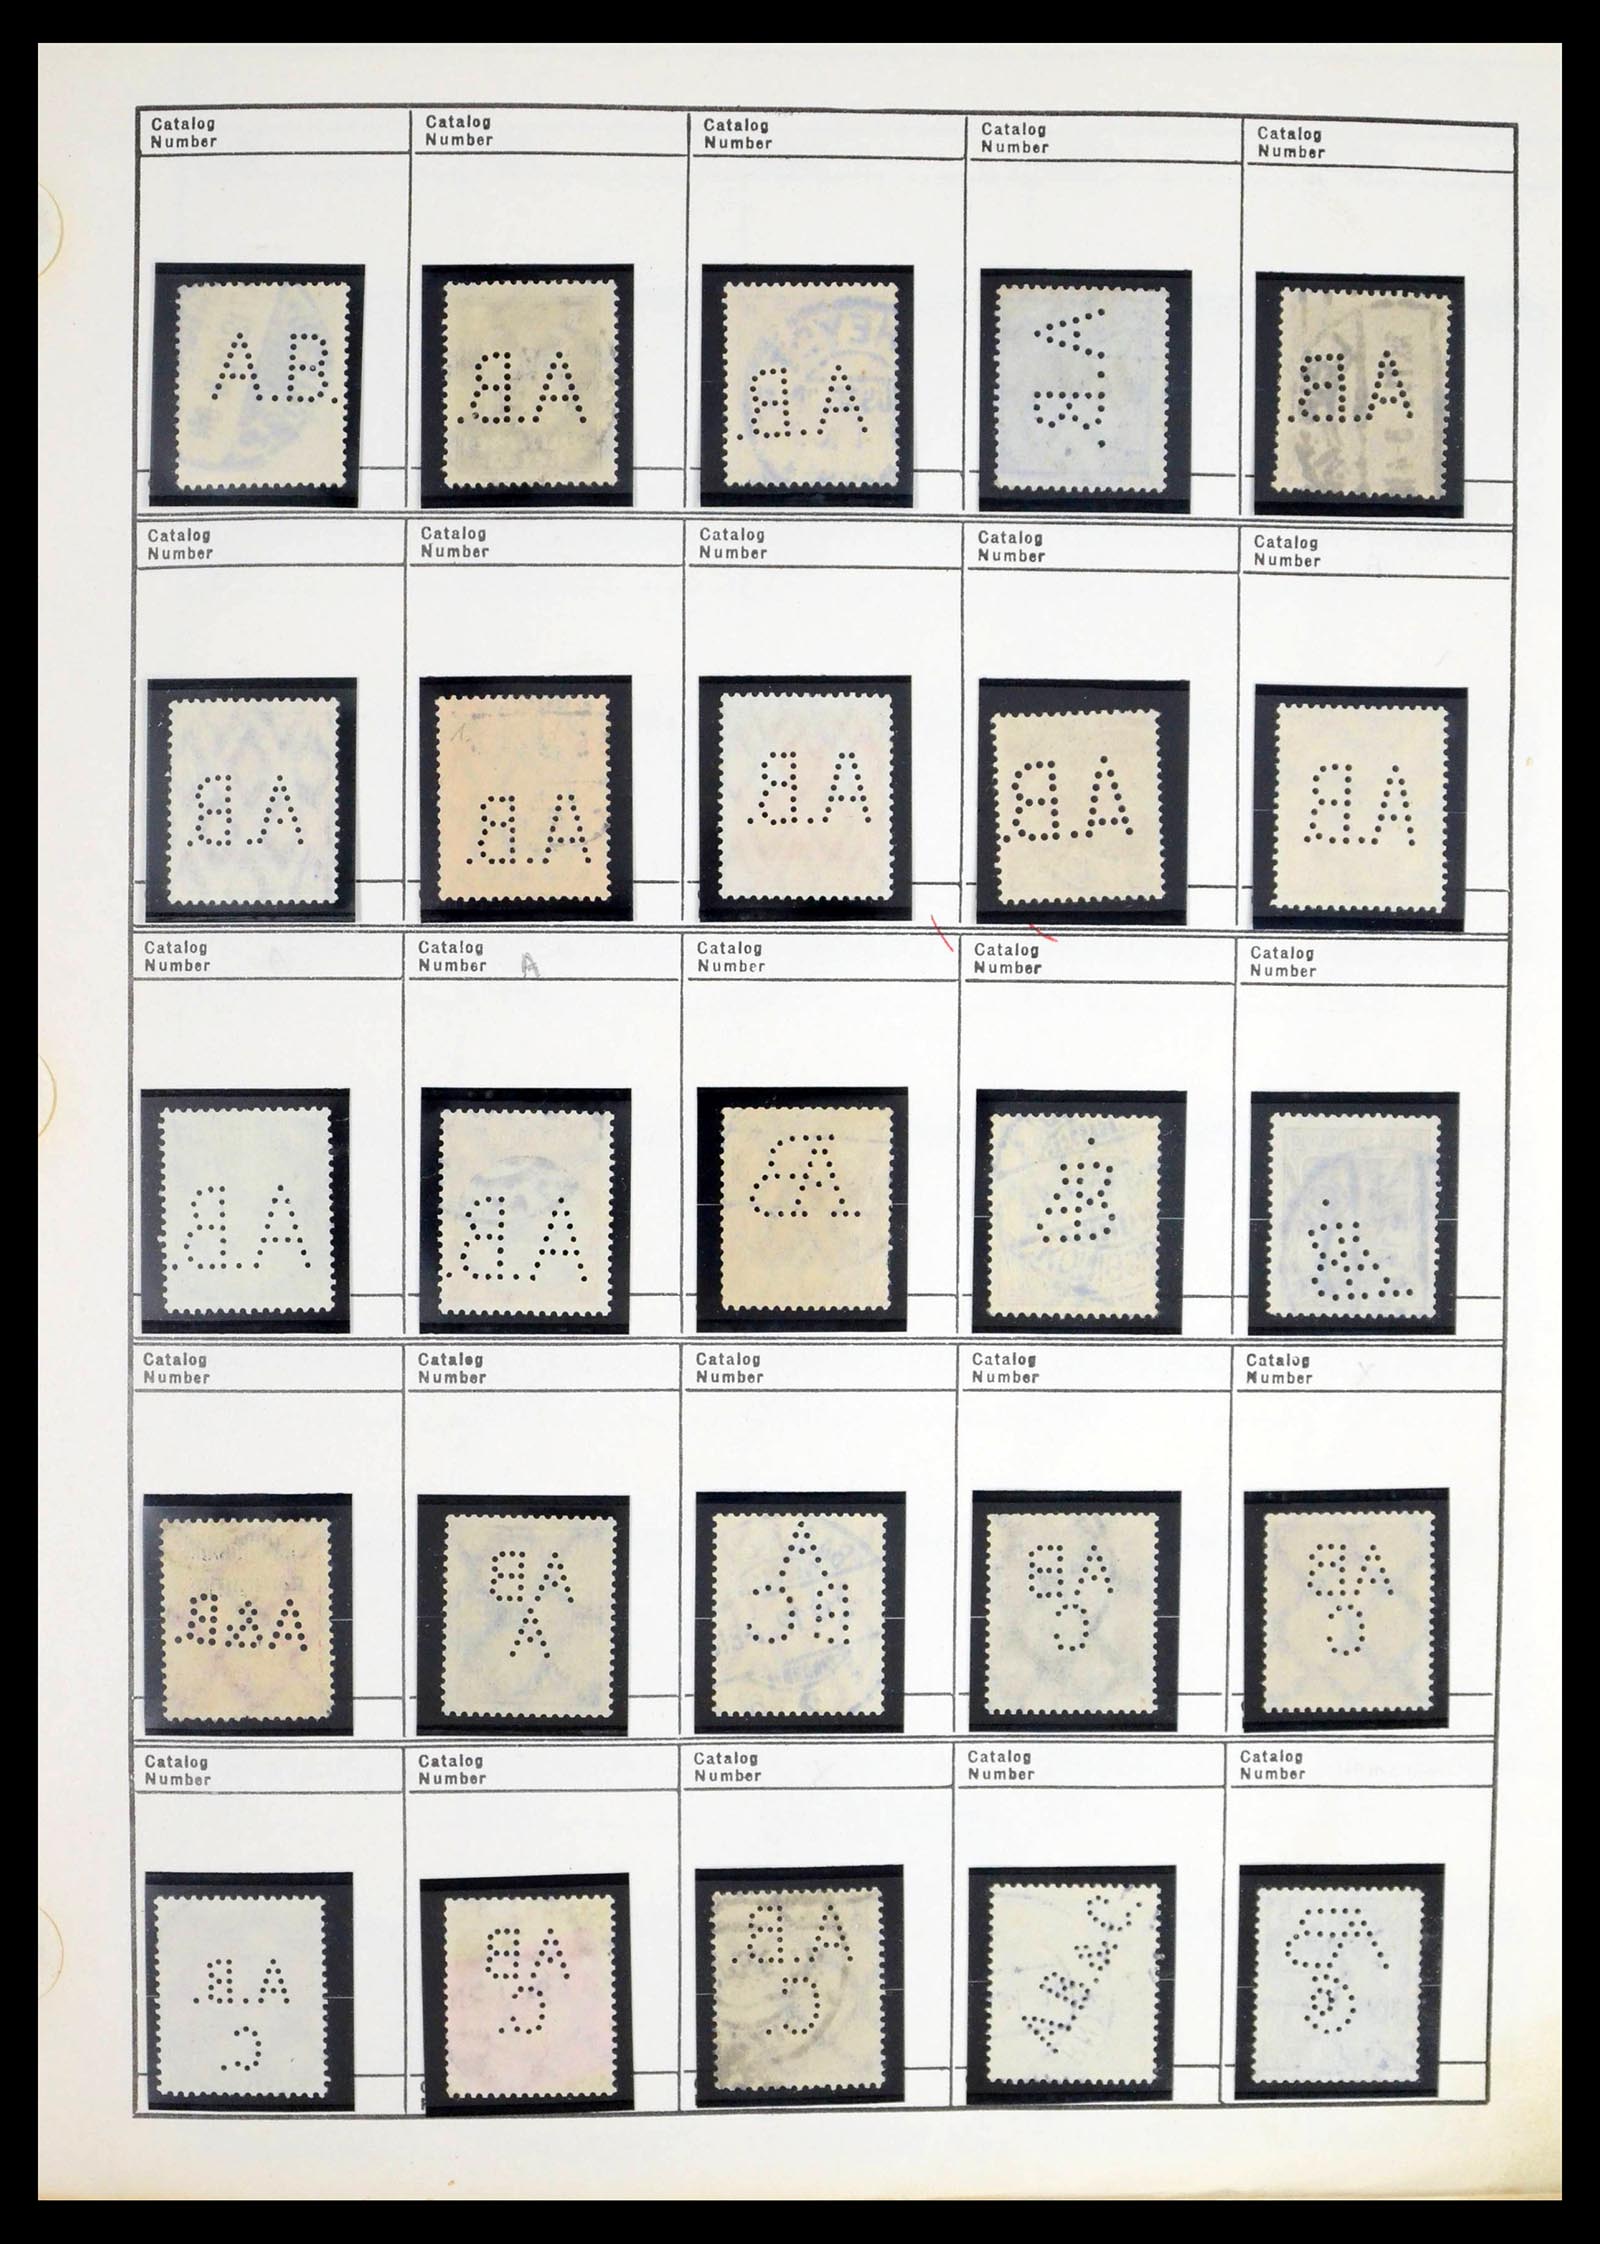 39480 0008 - Stamp collection 39480 German Reich perfins 1880-1955.